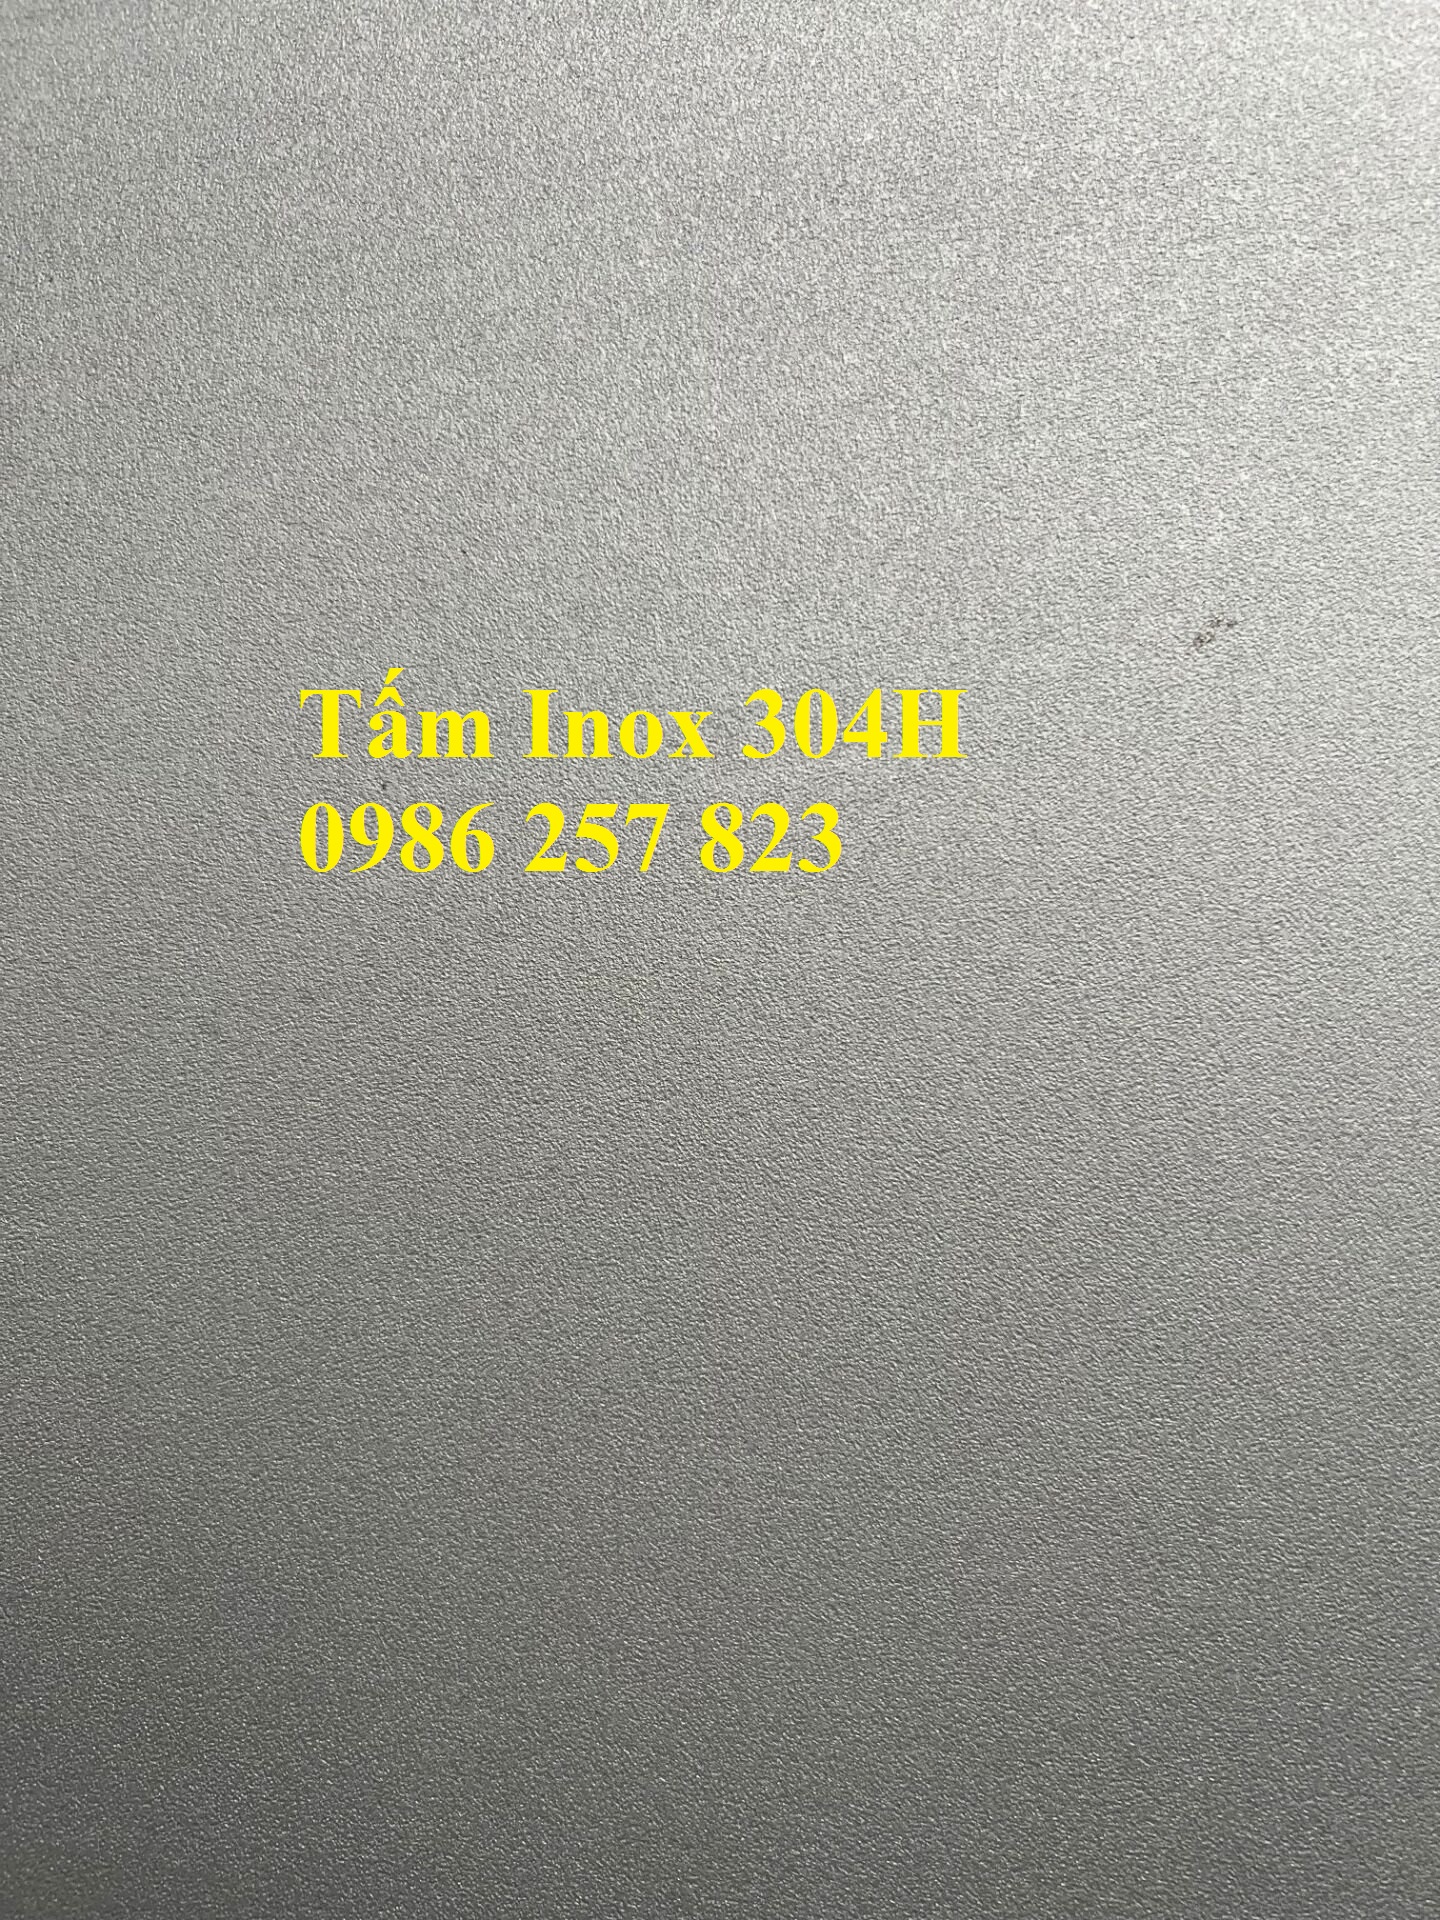 Cung cấp thép không gỉ Inox cán nóng 310S/ SUS310S giá tại nhà máy